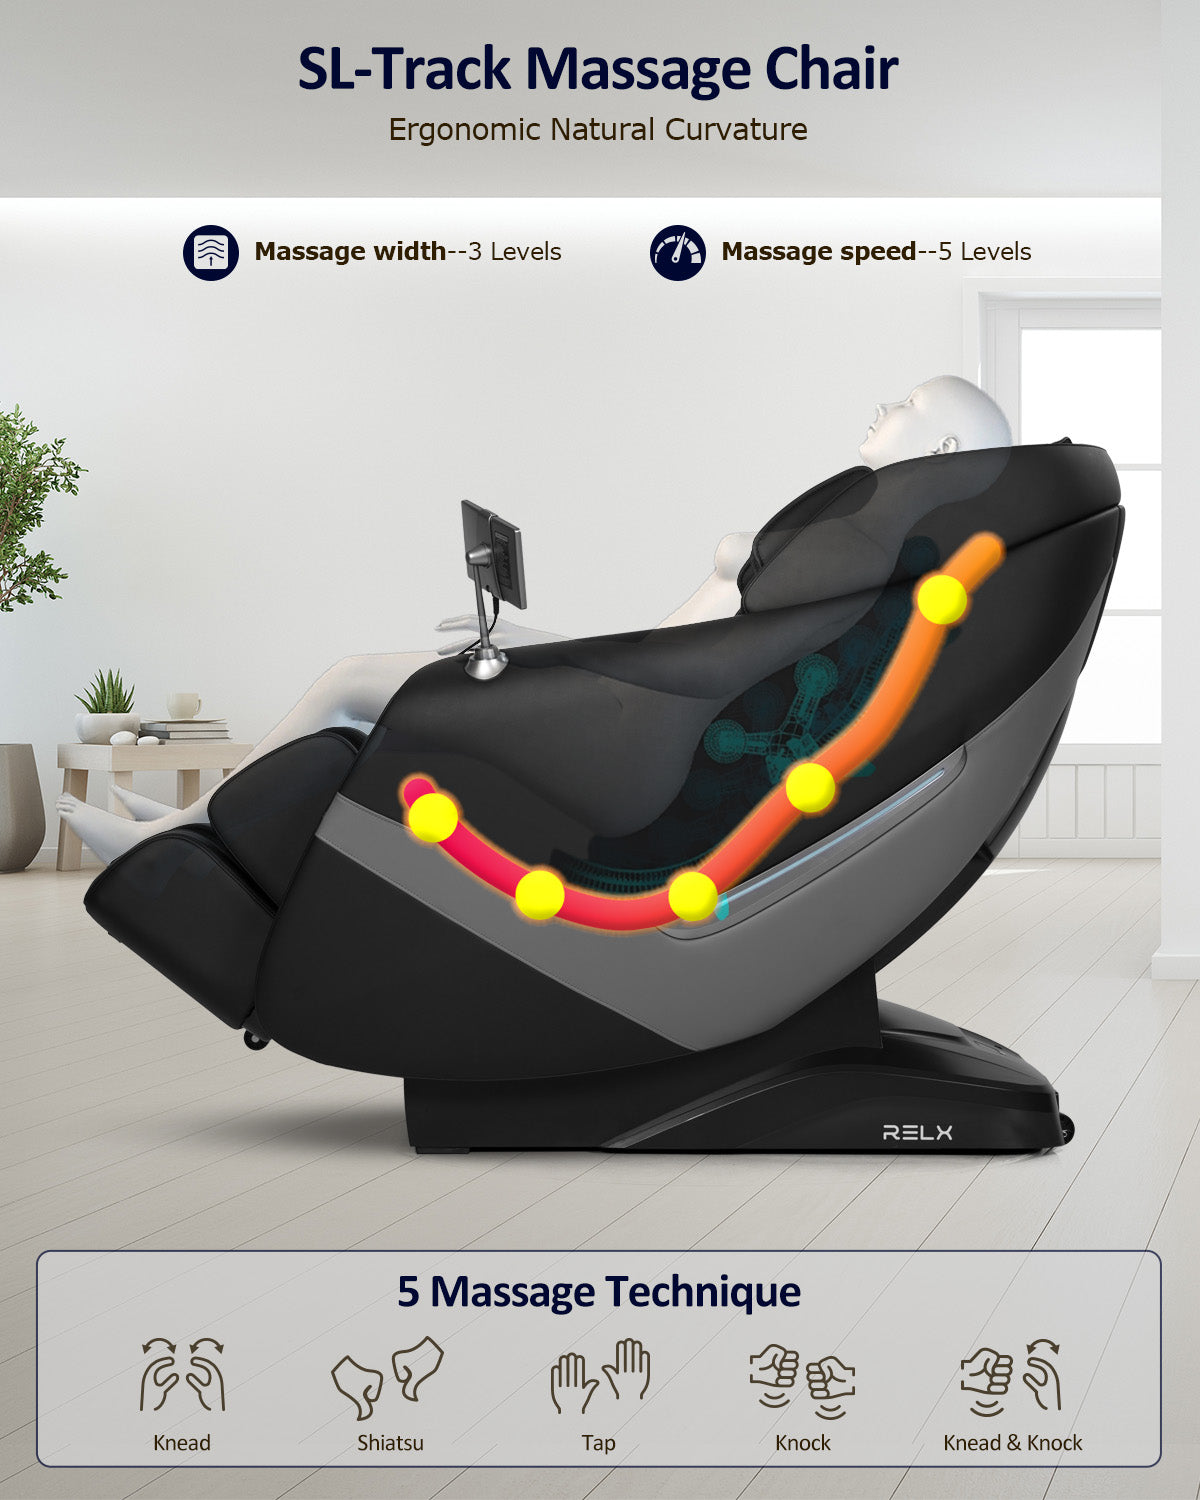 RELX Venus Pro AI Voice Controlled Massage Chair